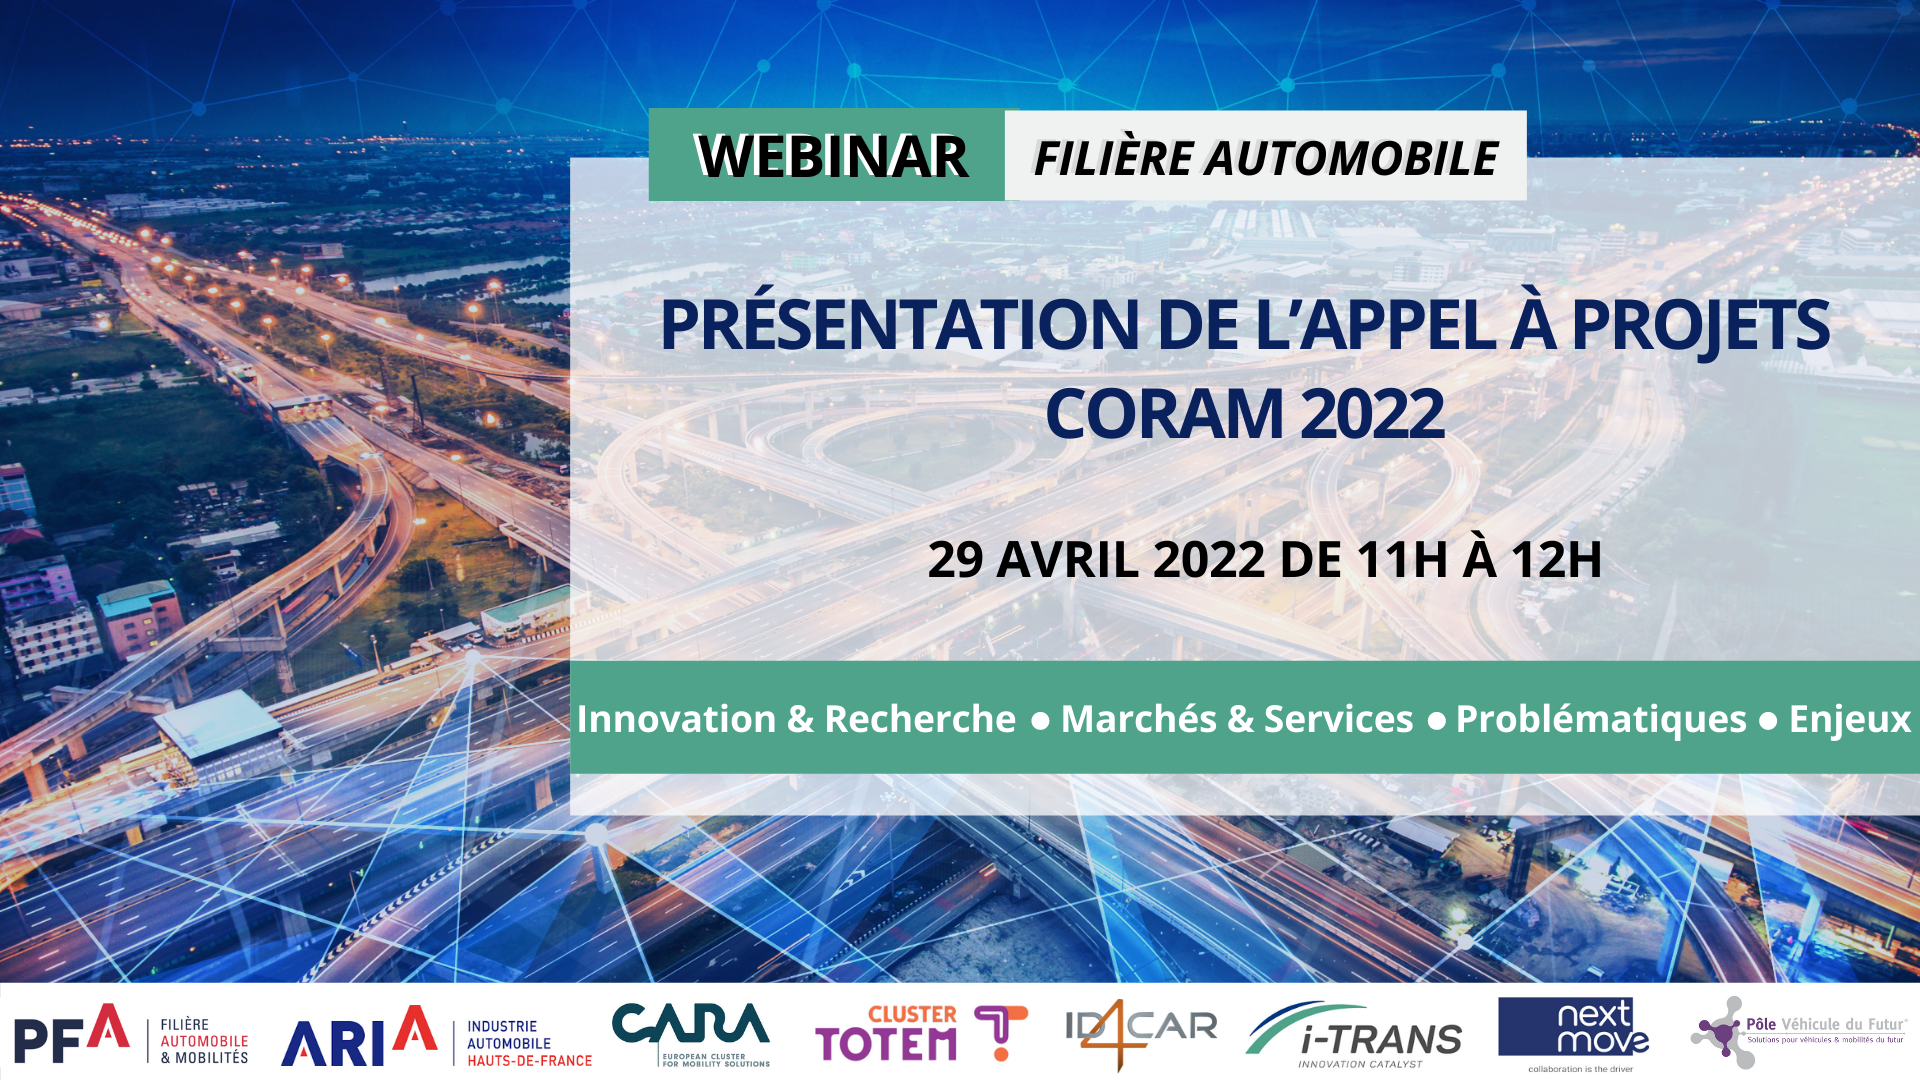 Webinar des filières automobiles et mobilités :  Présentation de l’appel à projets CORAM 2022